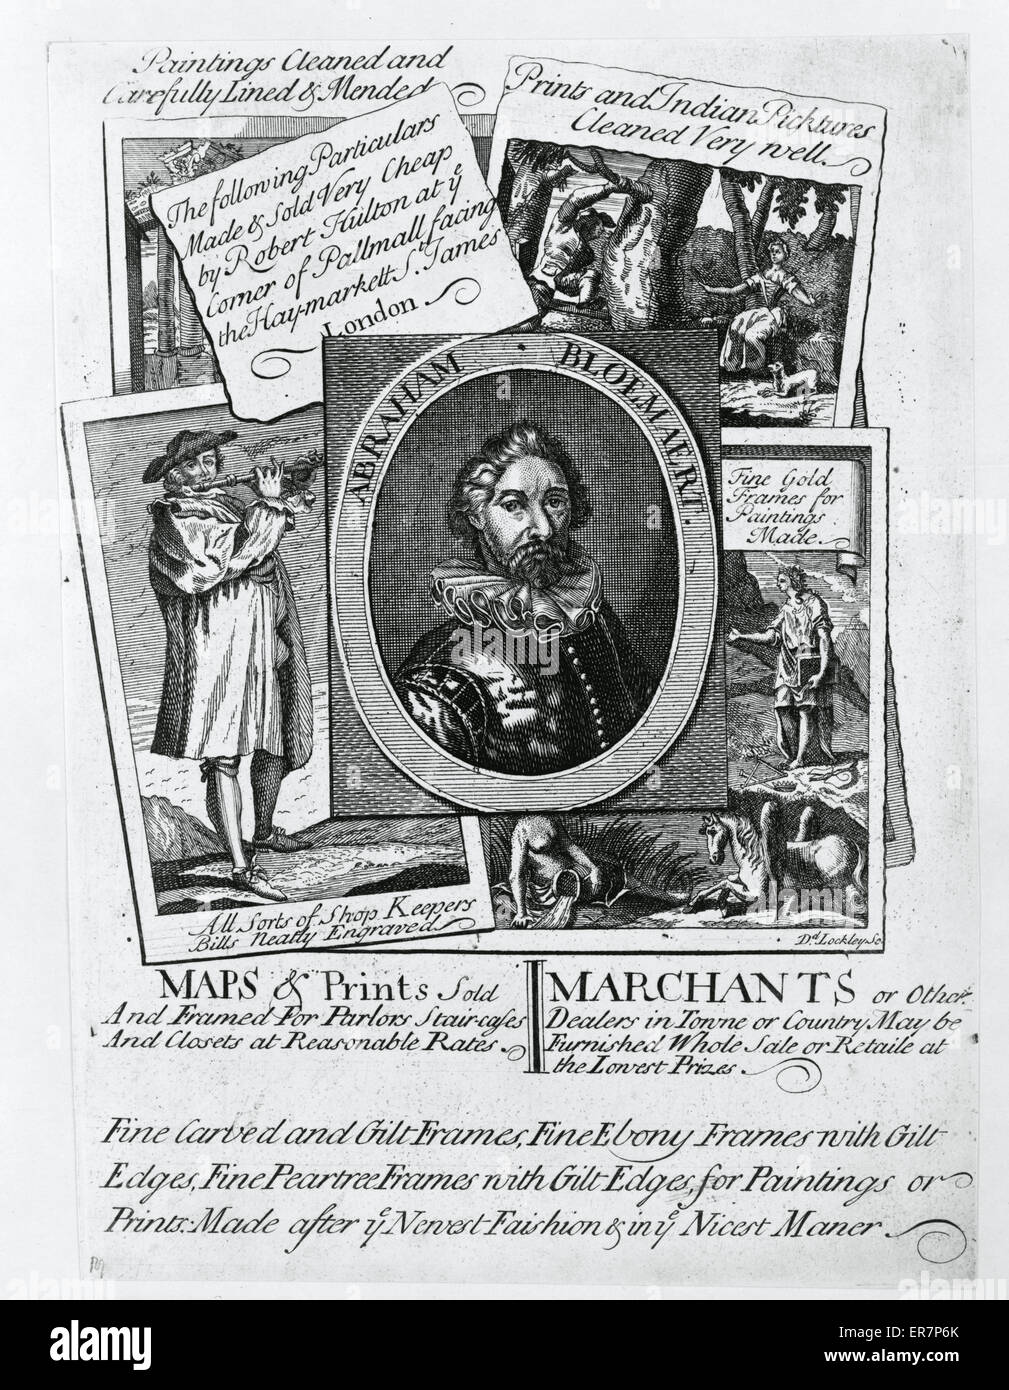 Mapas y estampas vendidas y impresión enmarcada, un anuncio para Robert Hulton's London shop, muestra los tipos de copias vendidas y enmarcada en el establecimiento. Incluye un retrato del artista holandés Abraham Bloemaert. Fecha entre 1715 y 1730. Foto de stock